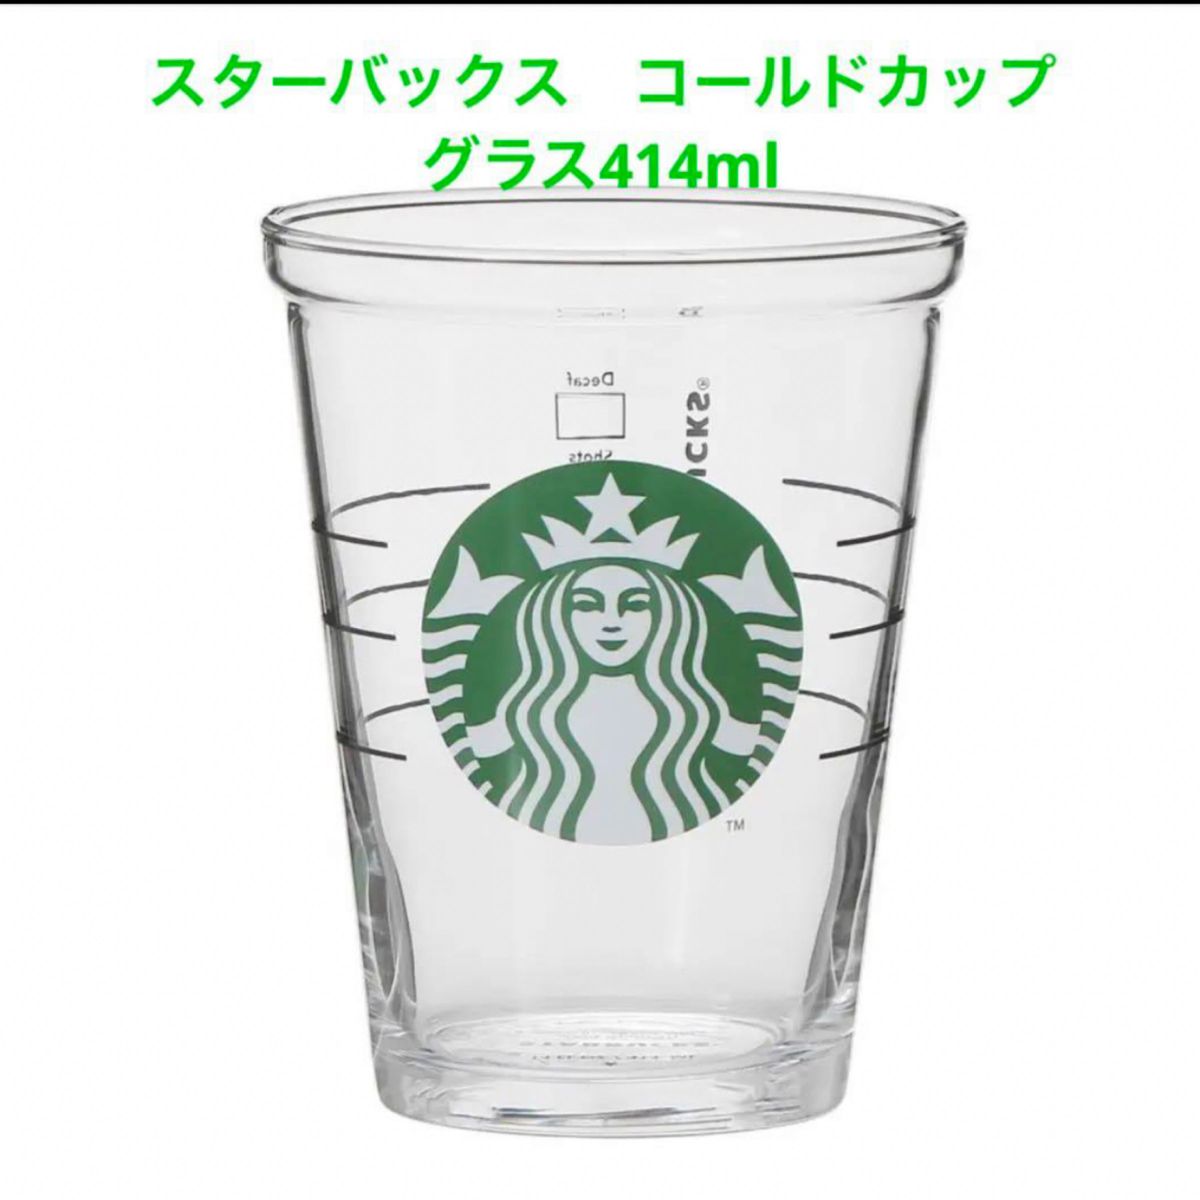 スターバックス　コールドカップグラス414ml Starbucks STARBUCKS ロゴグラス